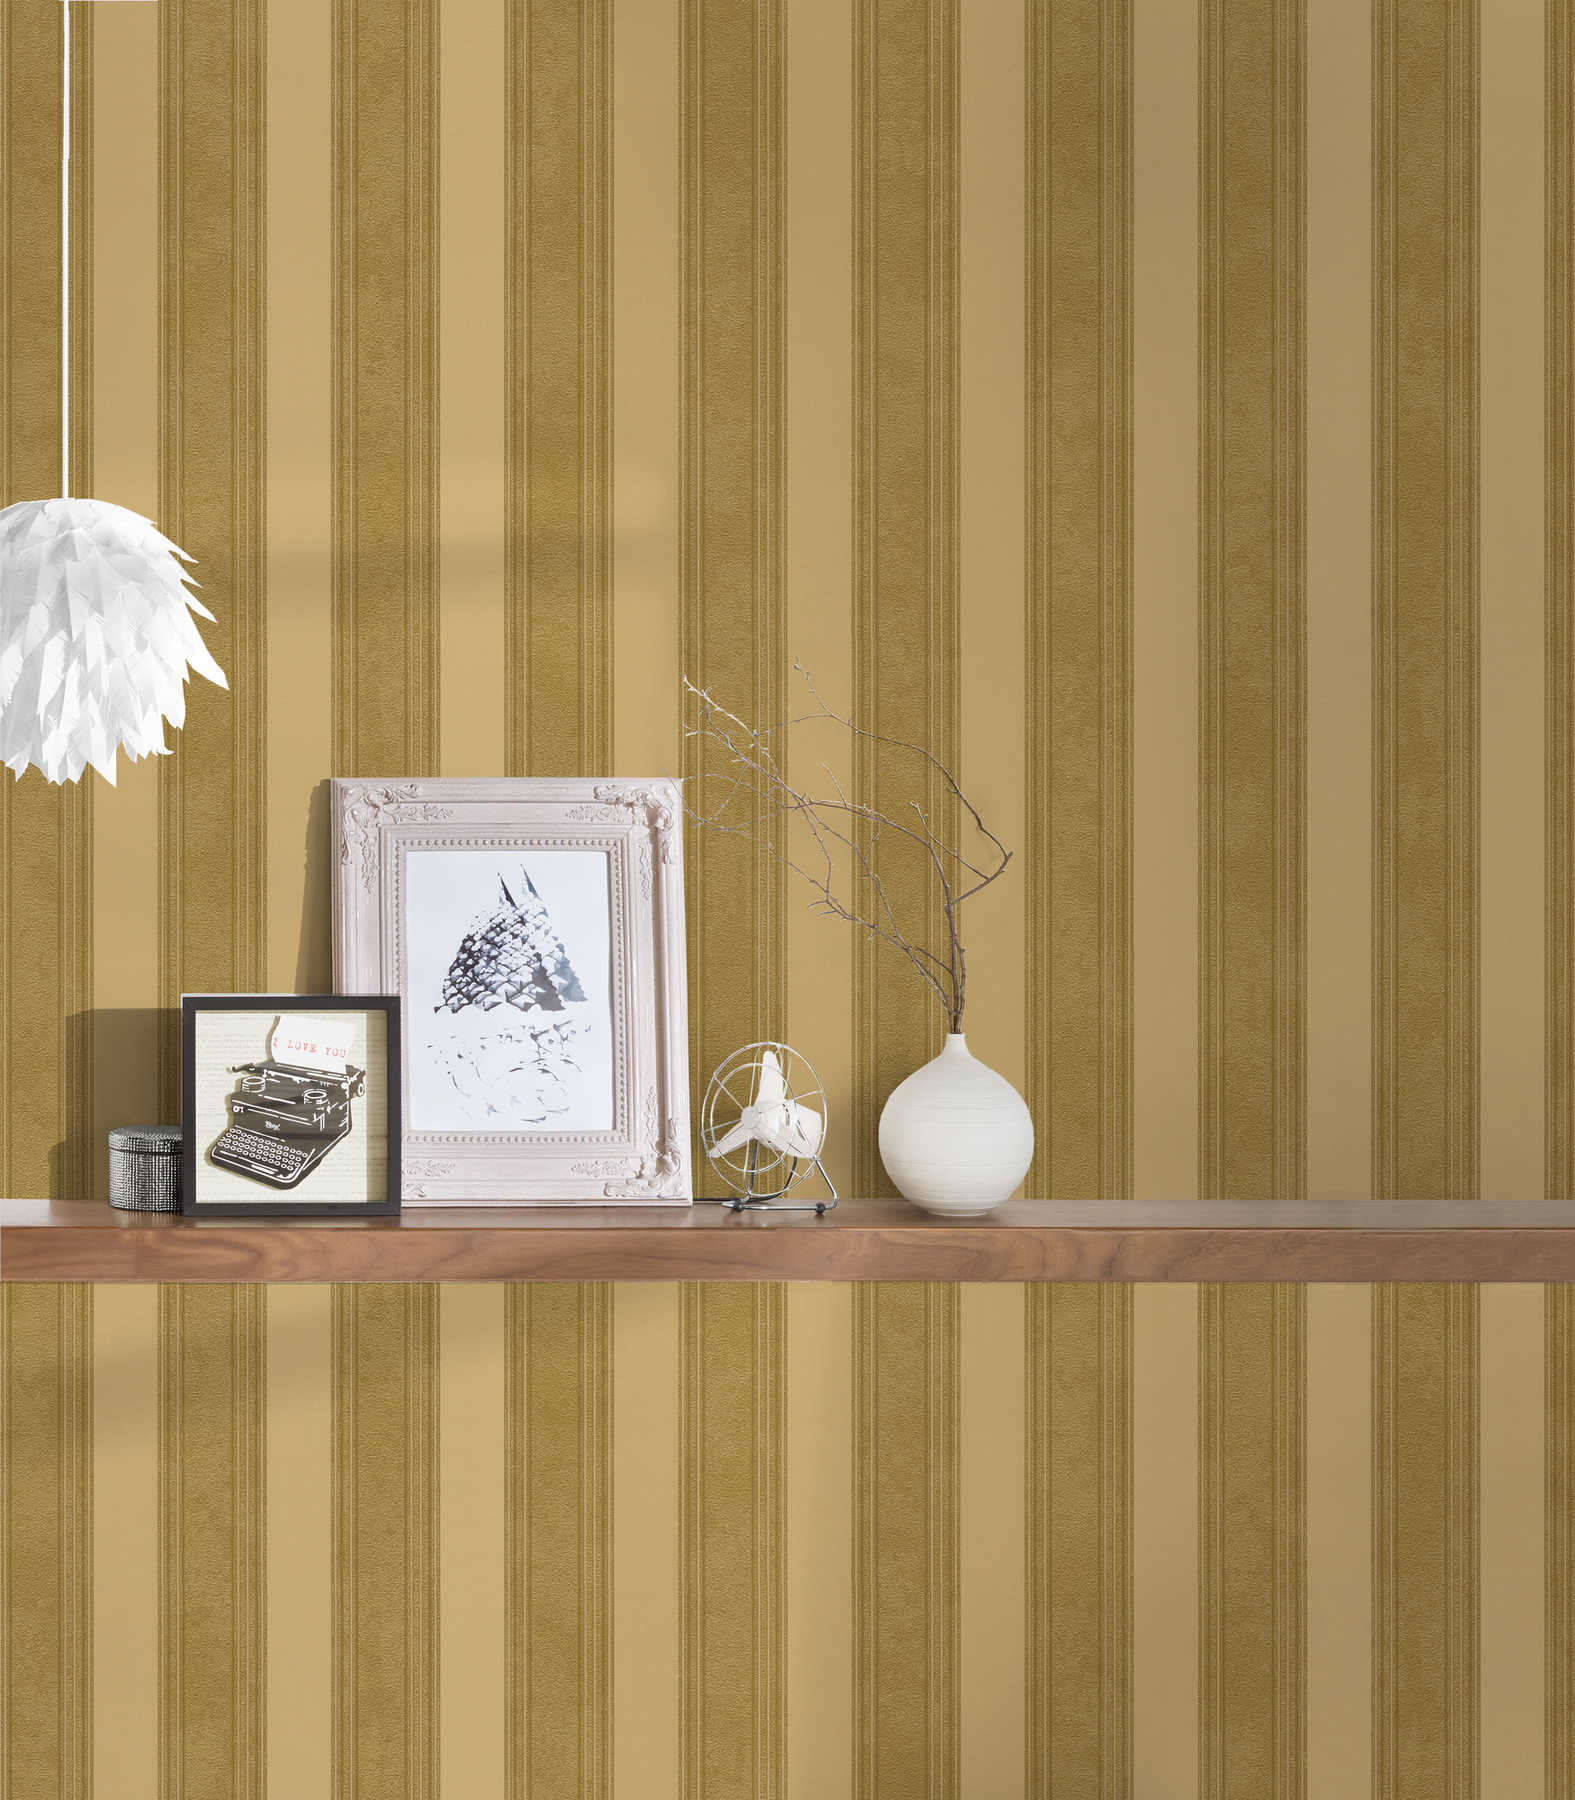             Golden stripe wallpaper with lines & texture effect - metallic
        